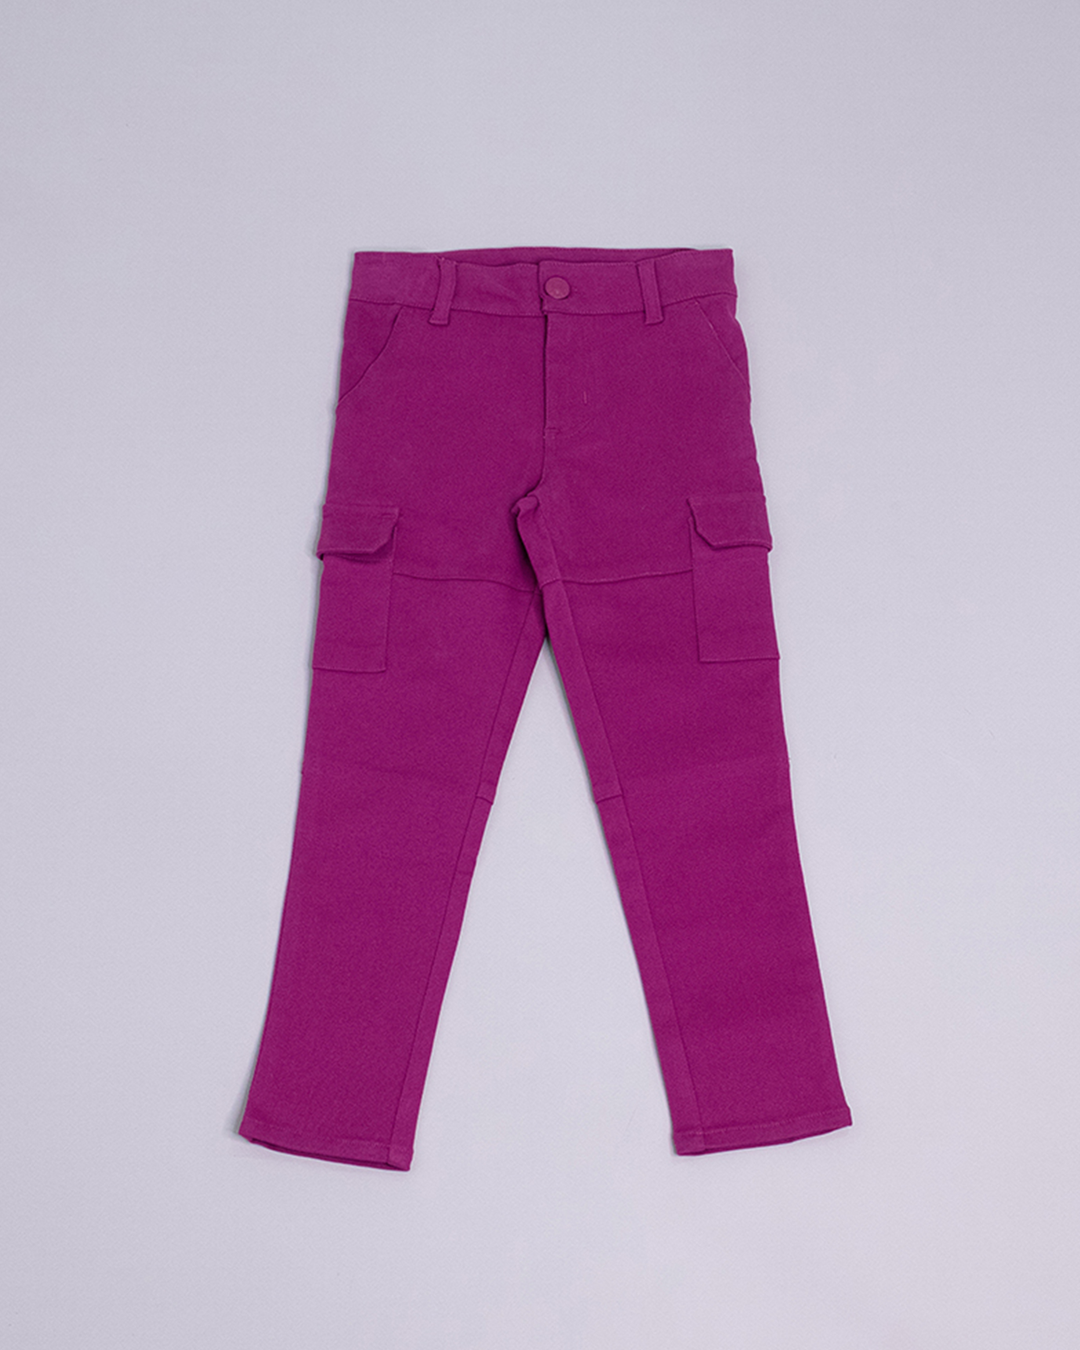 Pantalón cargo de color magenta y bolsillos a los lados